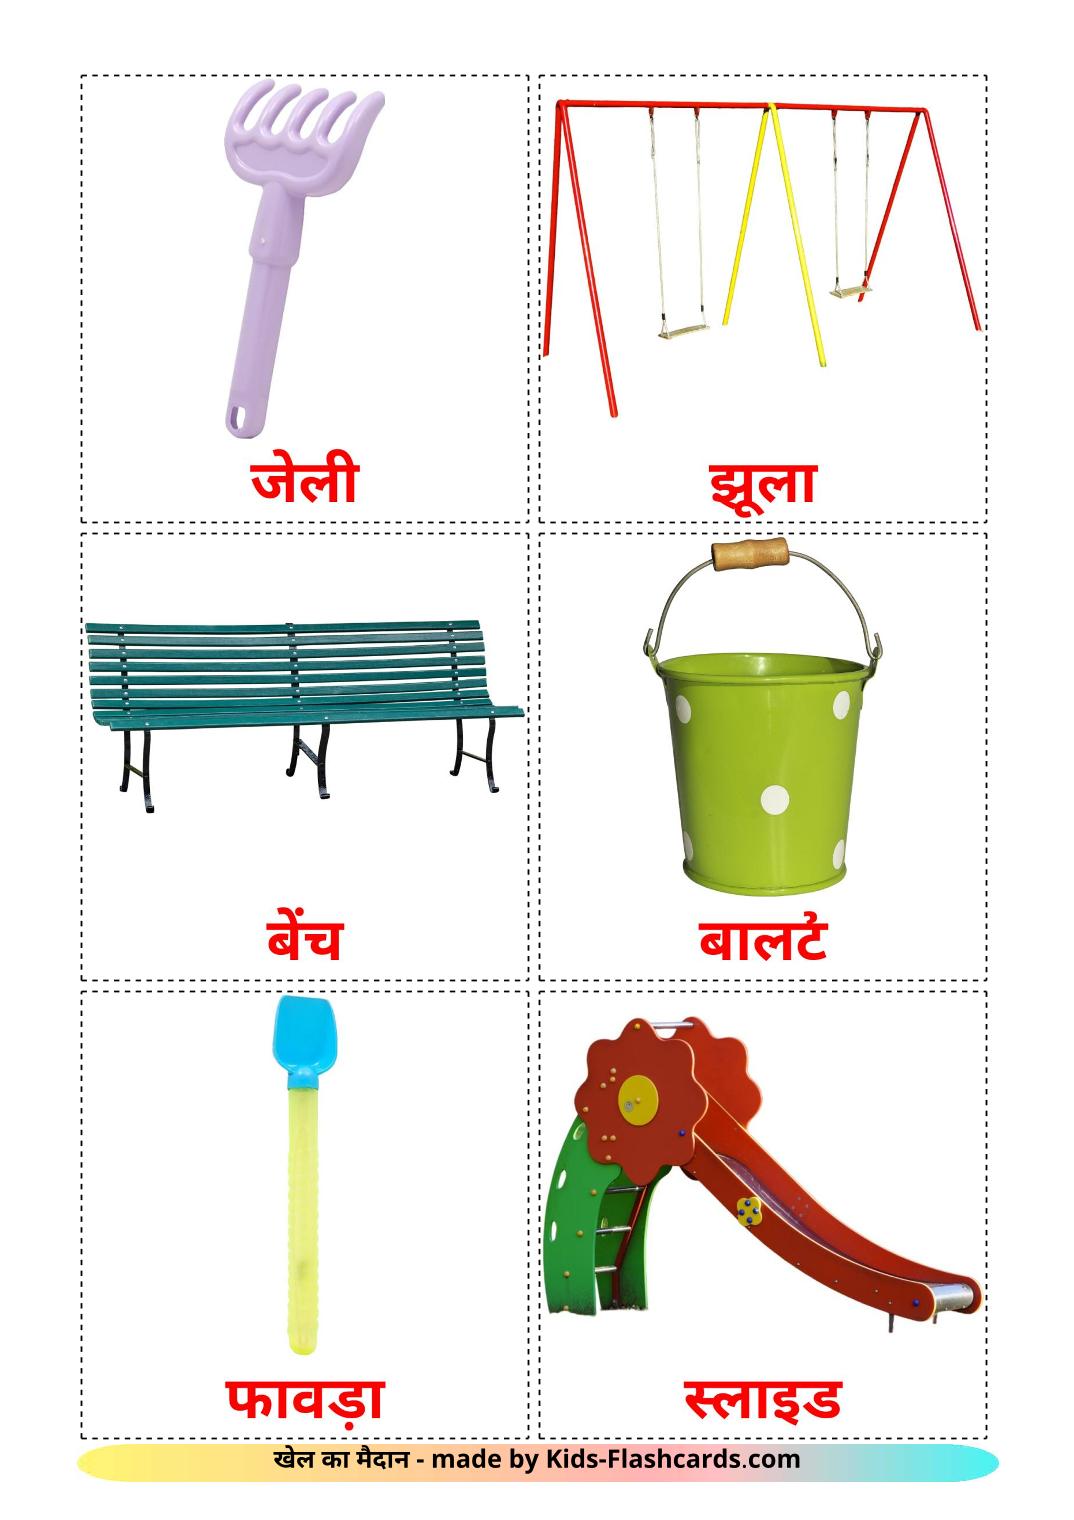 Parque infantil - 13 fichas de hindi para imprimir gratis 